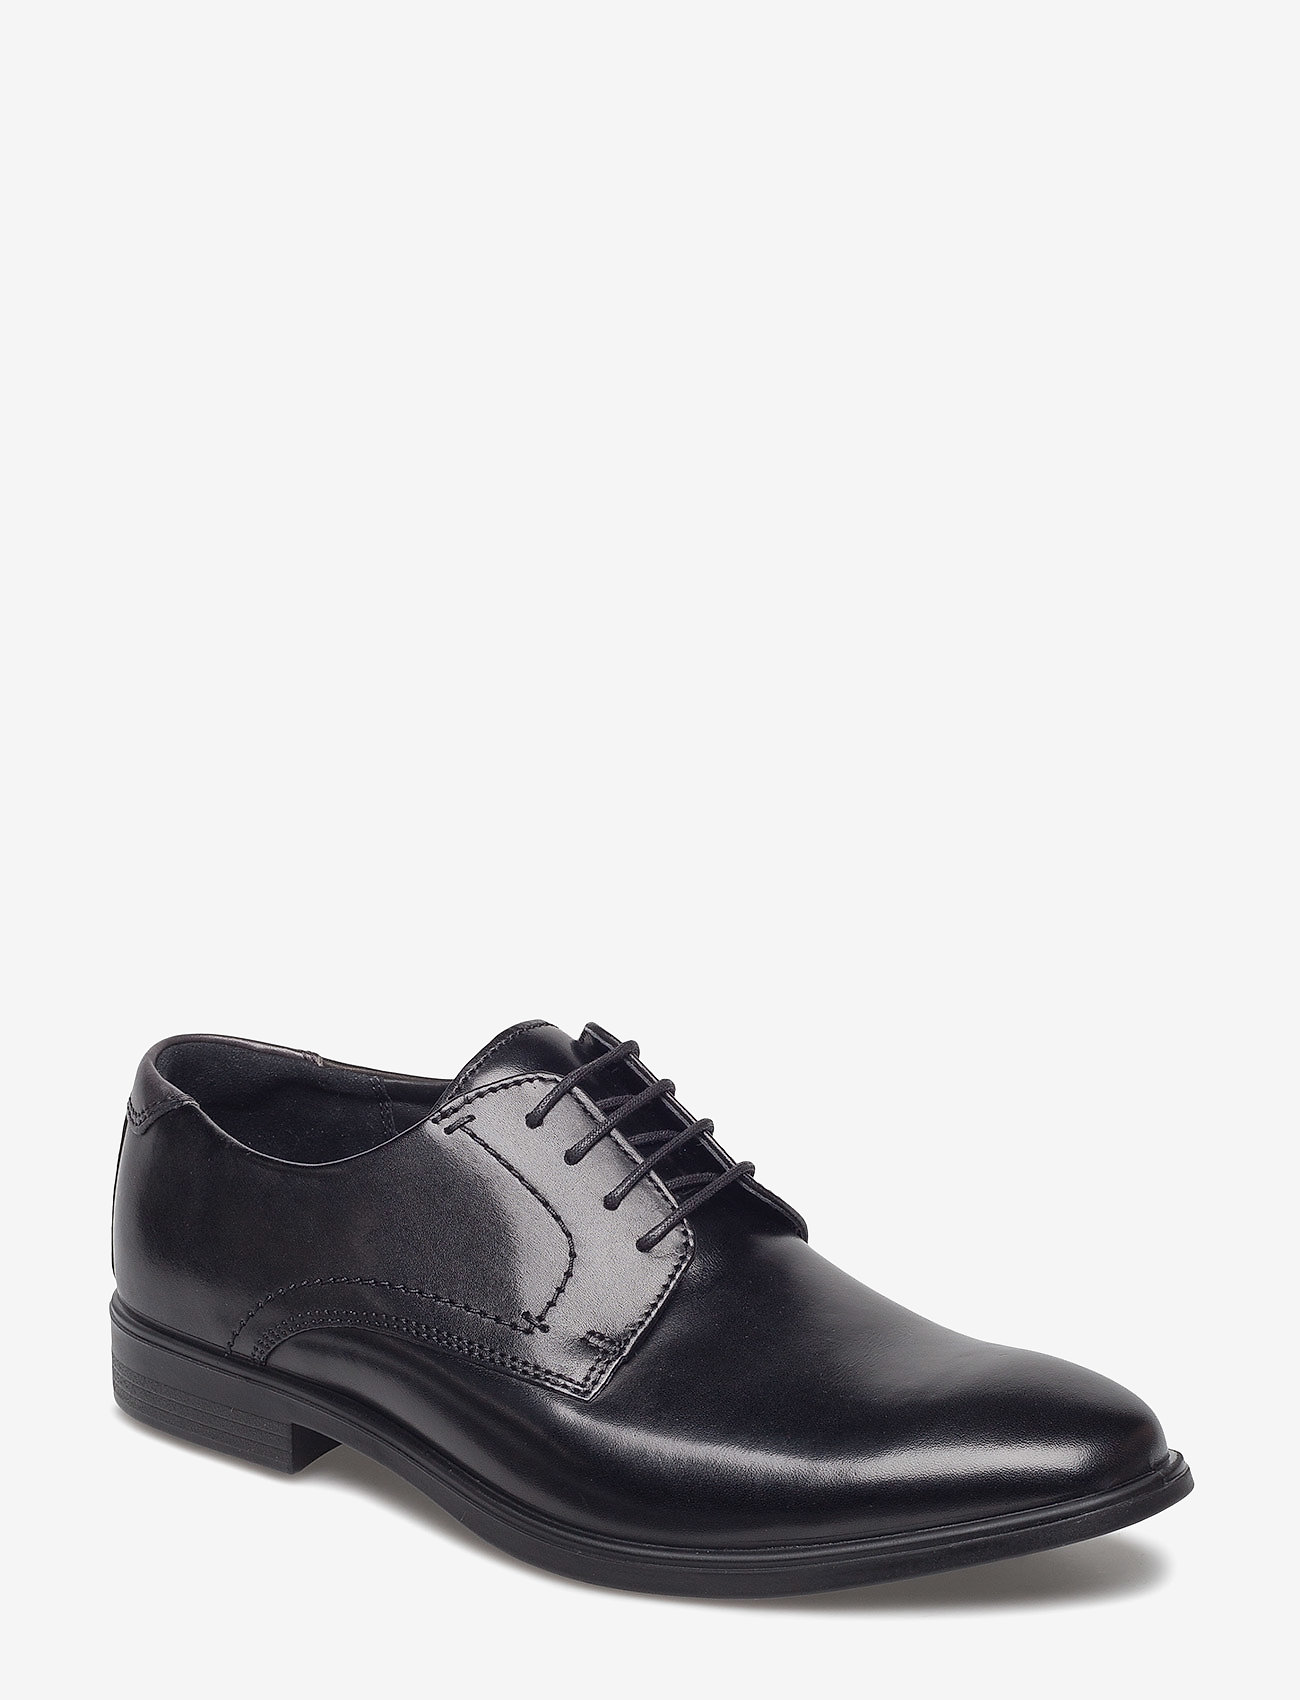 ECCO - MELBOURNE - laced shoes - black/magnet - 0